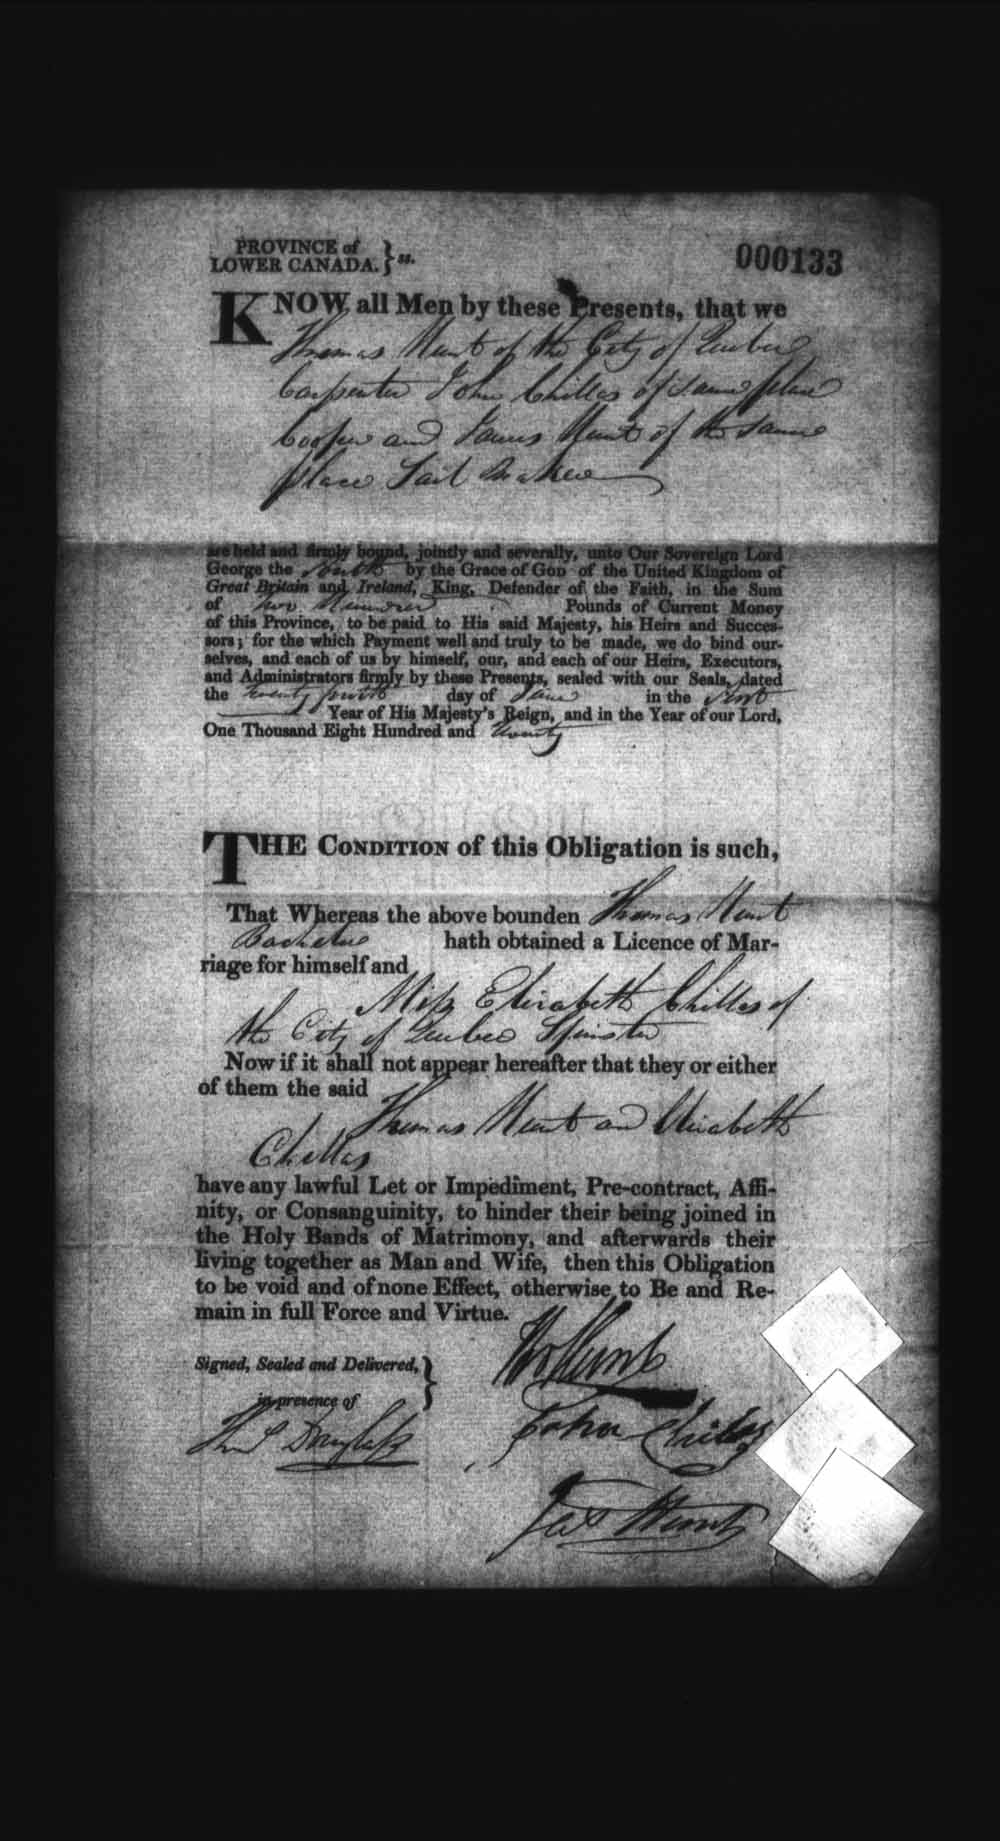 Page numérisé de Cautionnements de mariages pour le Haut-Canada et le Bas-Canada (1779-1865) pour l'image numéro: e008235967